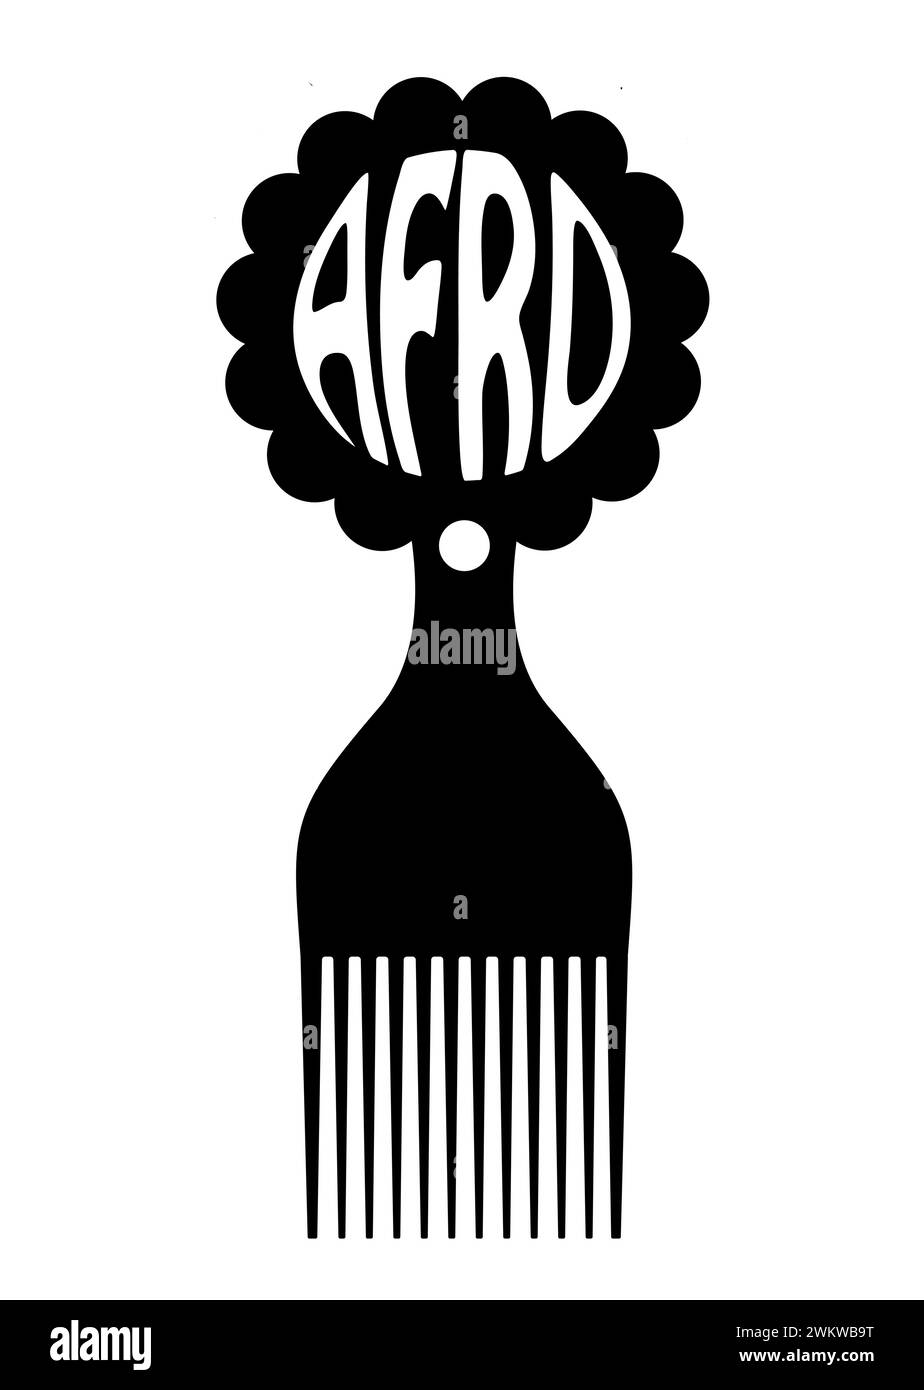 Symbole de peigne afro, signe africain de brosse à cheveux pour cheveux bouclés, conception plate simple de silhouette noire avec écriture de texte afro, illustration vectorielle isolée Illustration de Vecteur